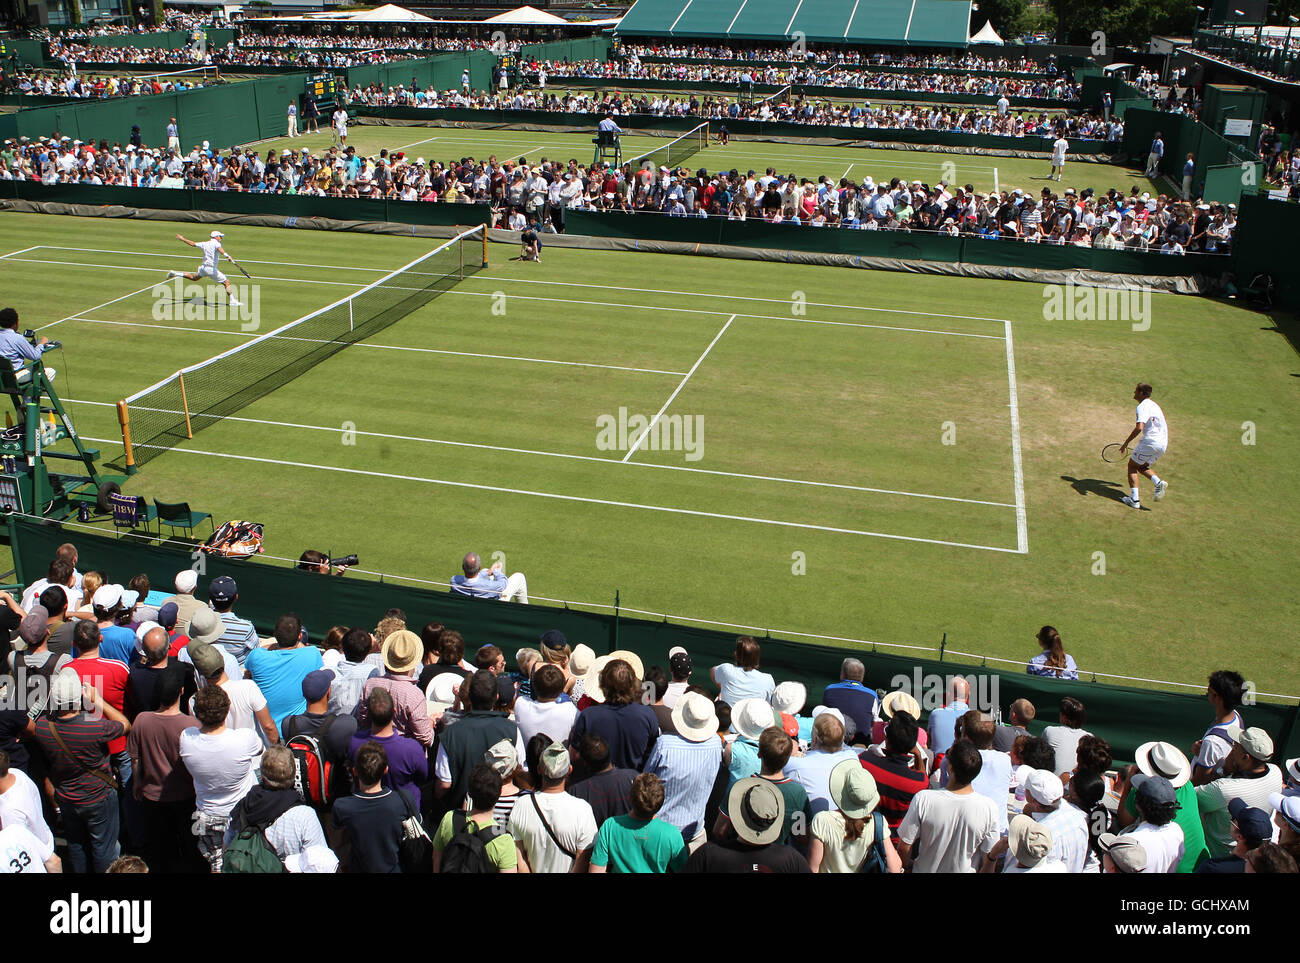 Tenis - Campeonato de Wimbledon 2010 - Día Dos - El Club de Tenis y Croquet All England Lawn. Una vista a través de los tribunales 8, 9, 10 y 11 Foto de stock